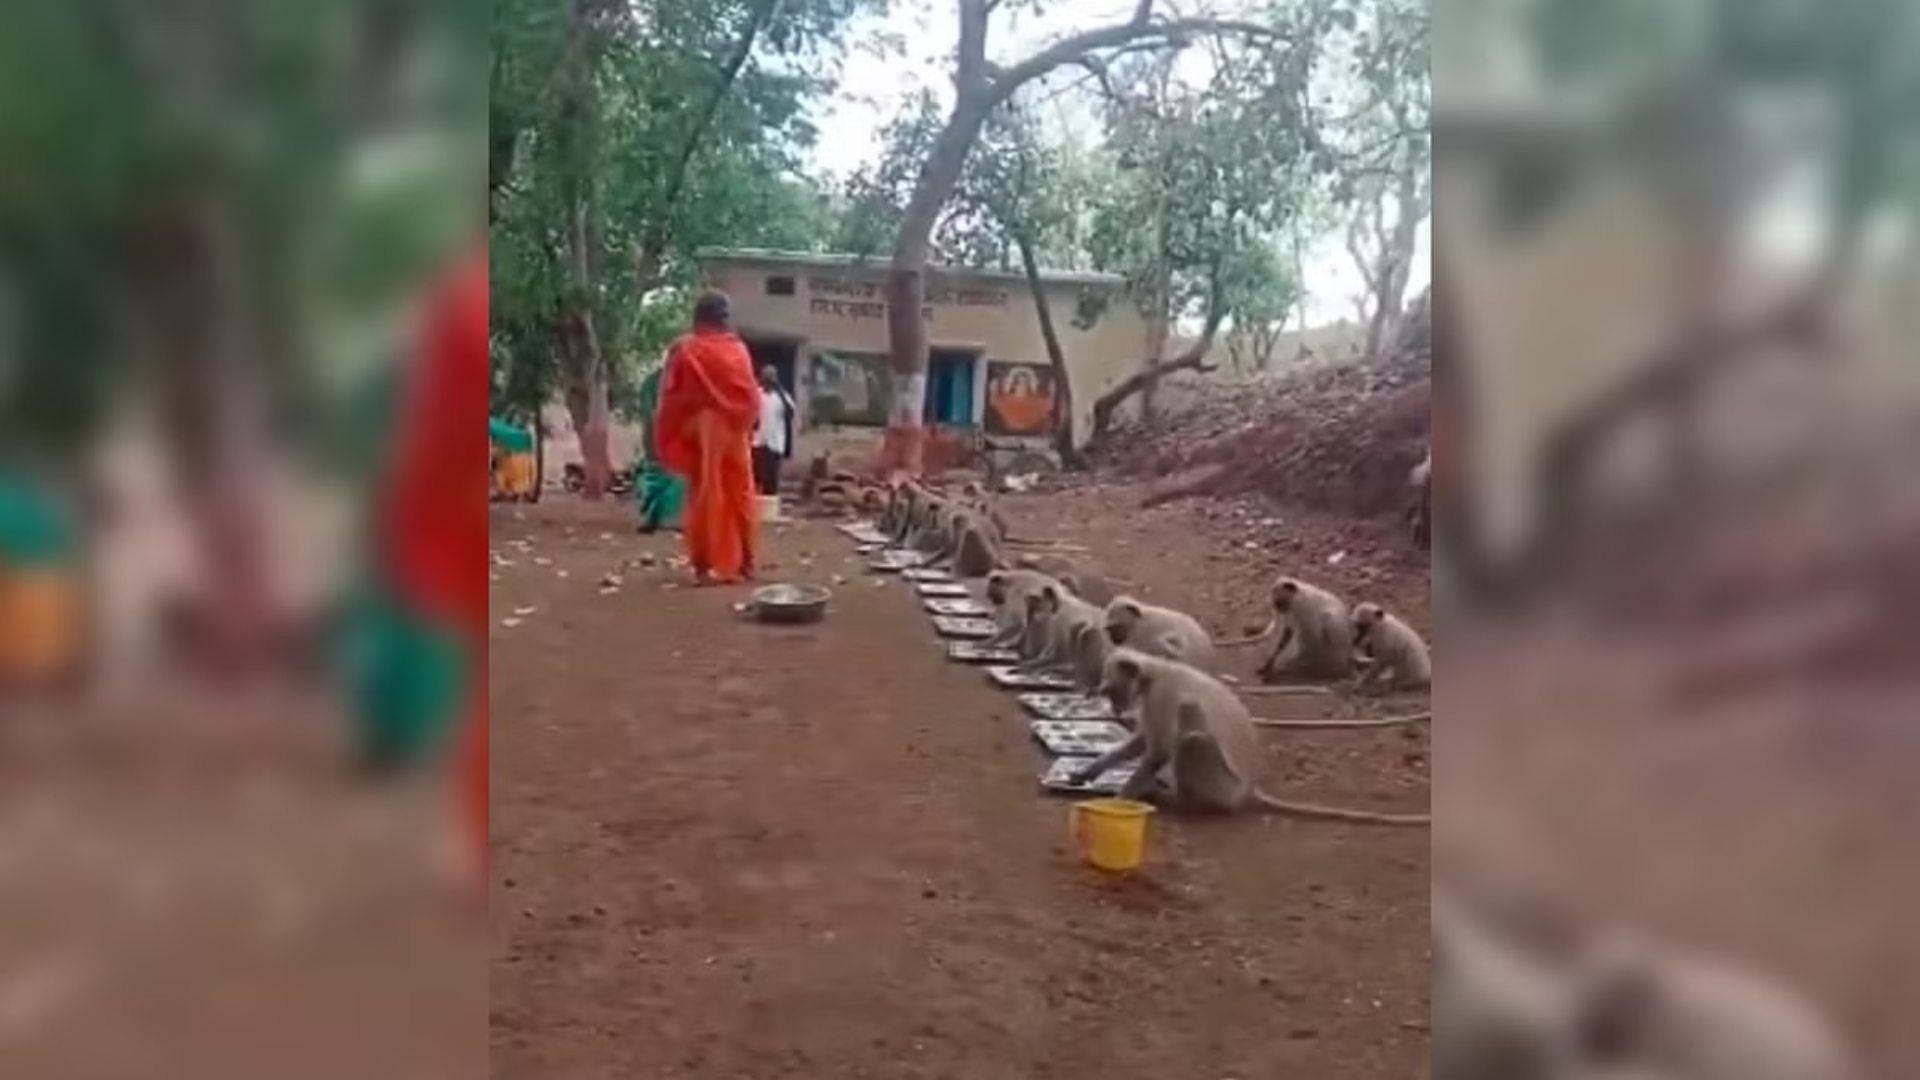 Viral Video: Disciplined langurs monkey enjoy food in queue showed discipline like humans